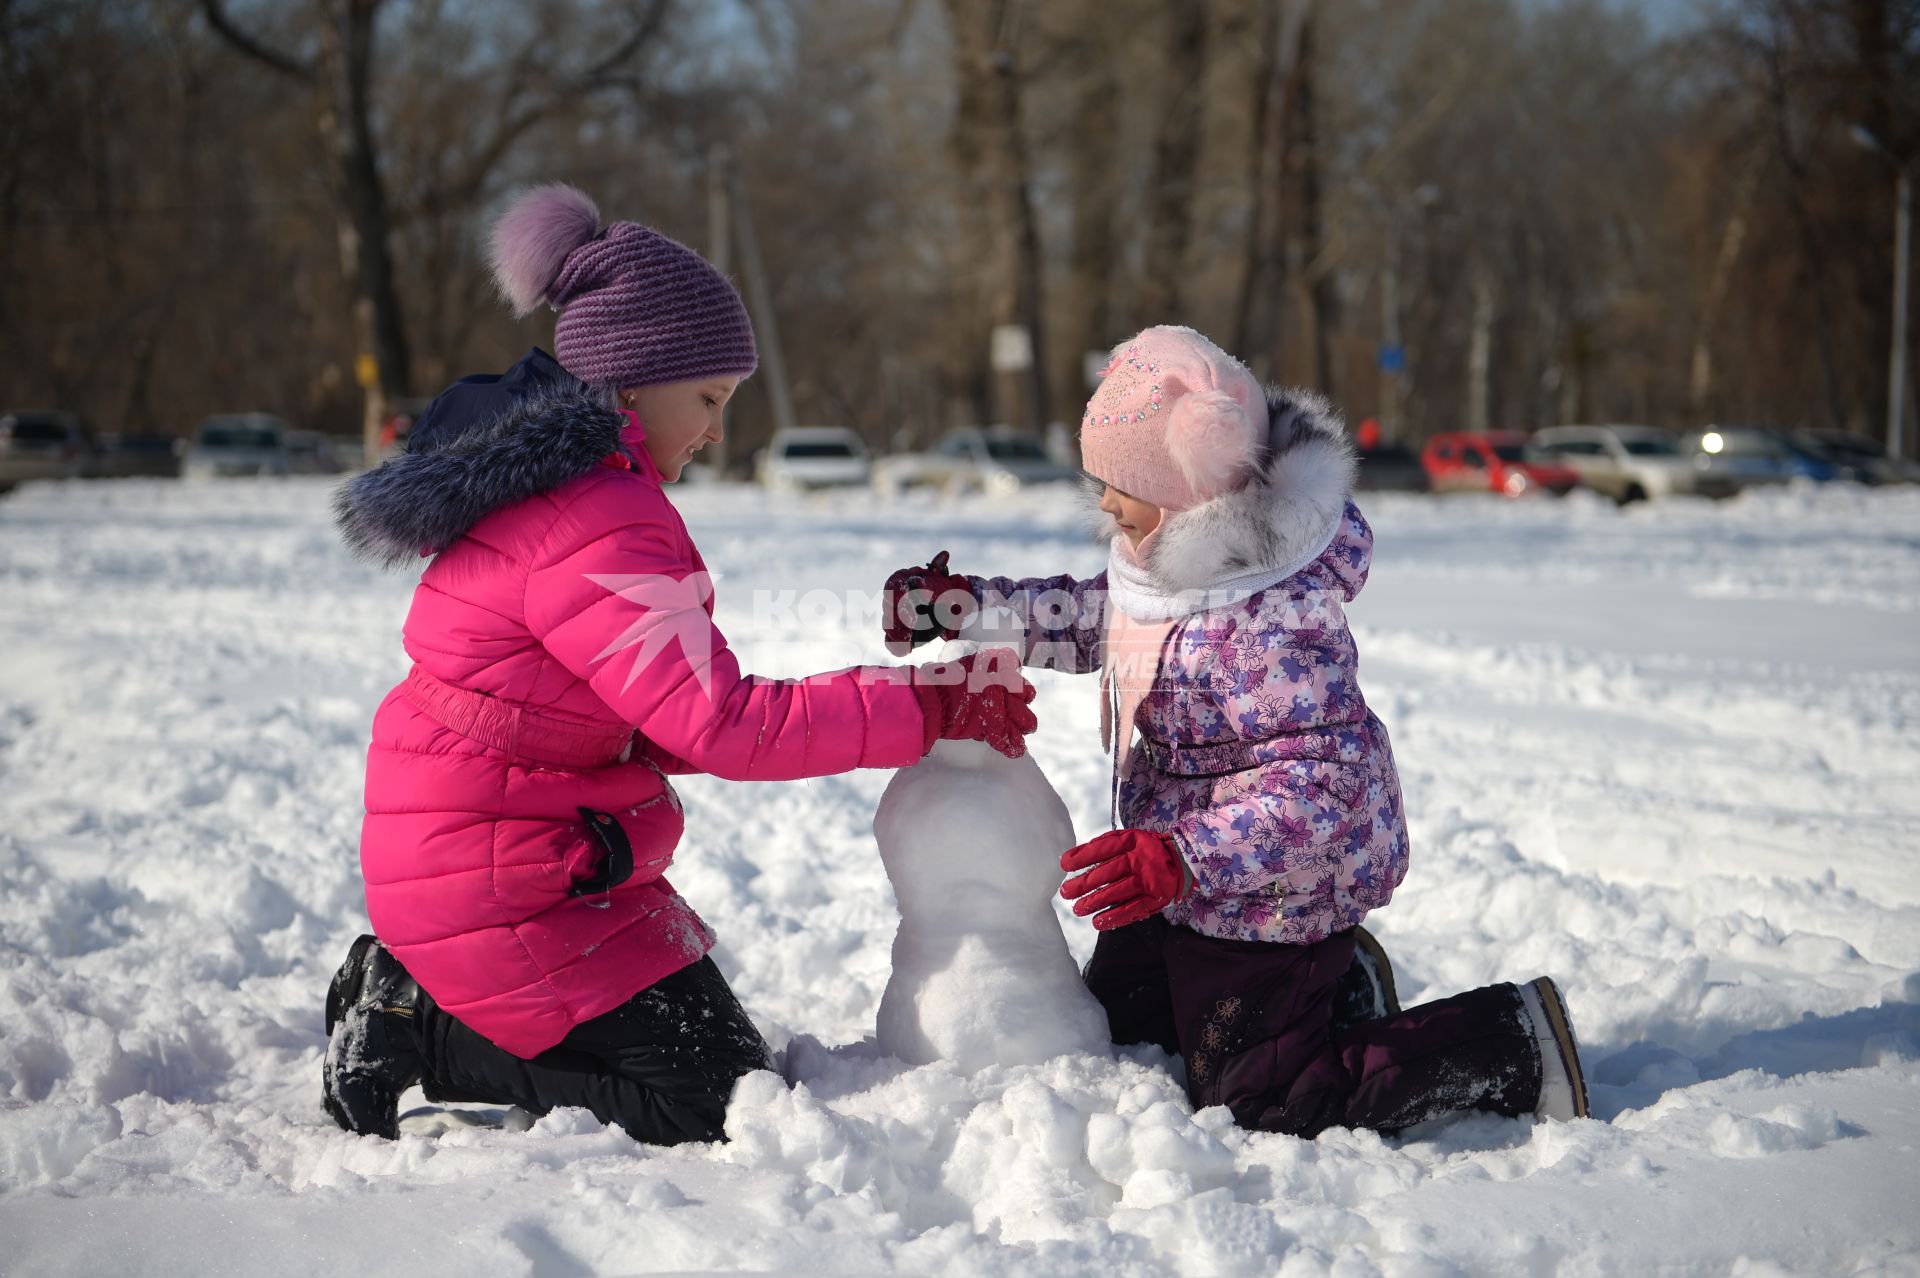 Оренбург. Дети лепят снеговика.